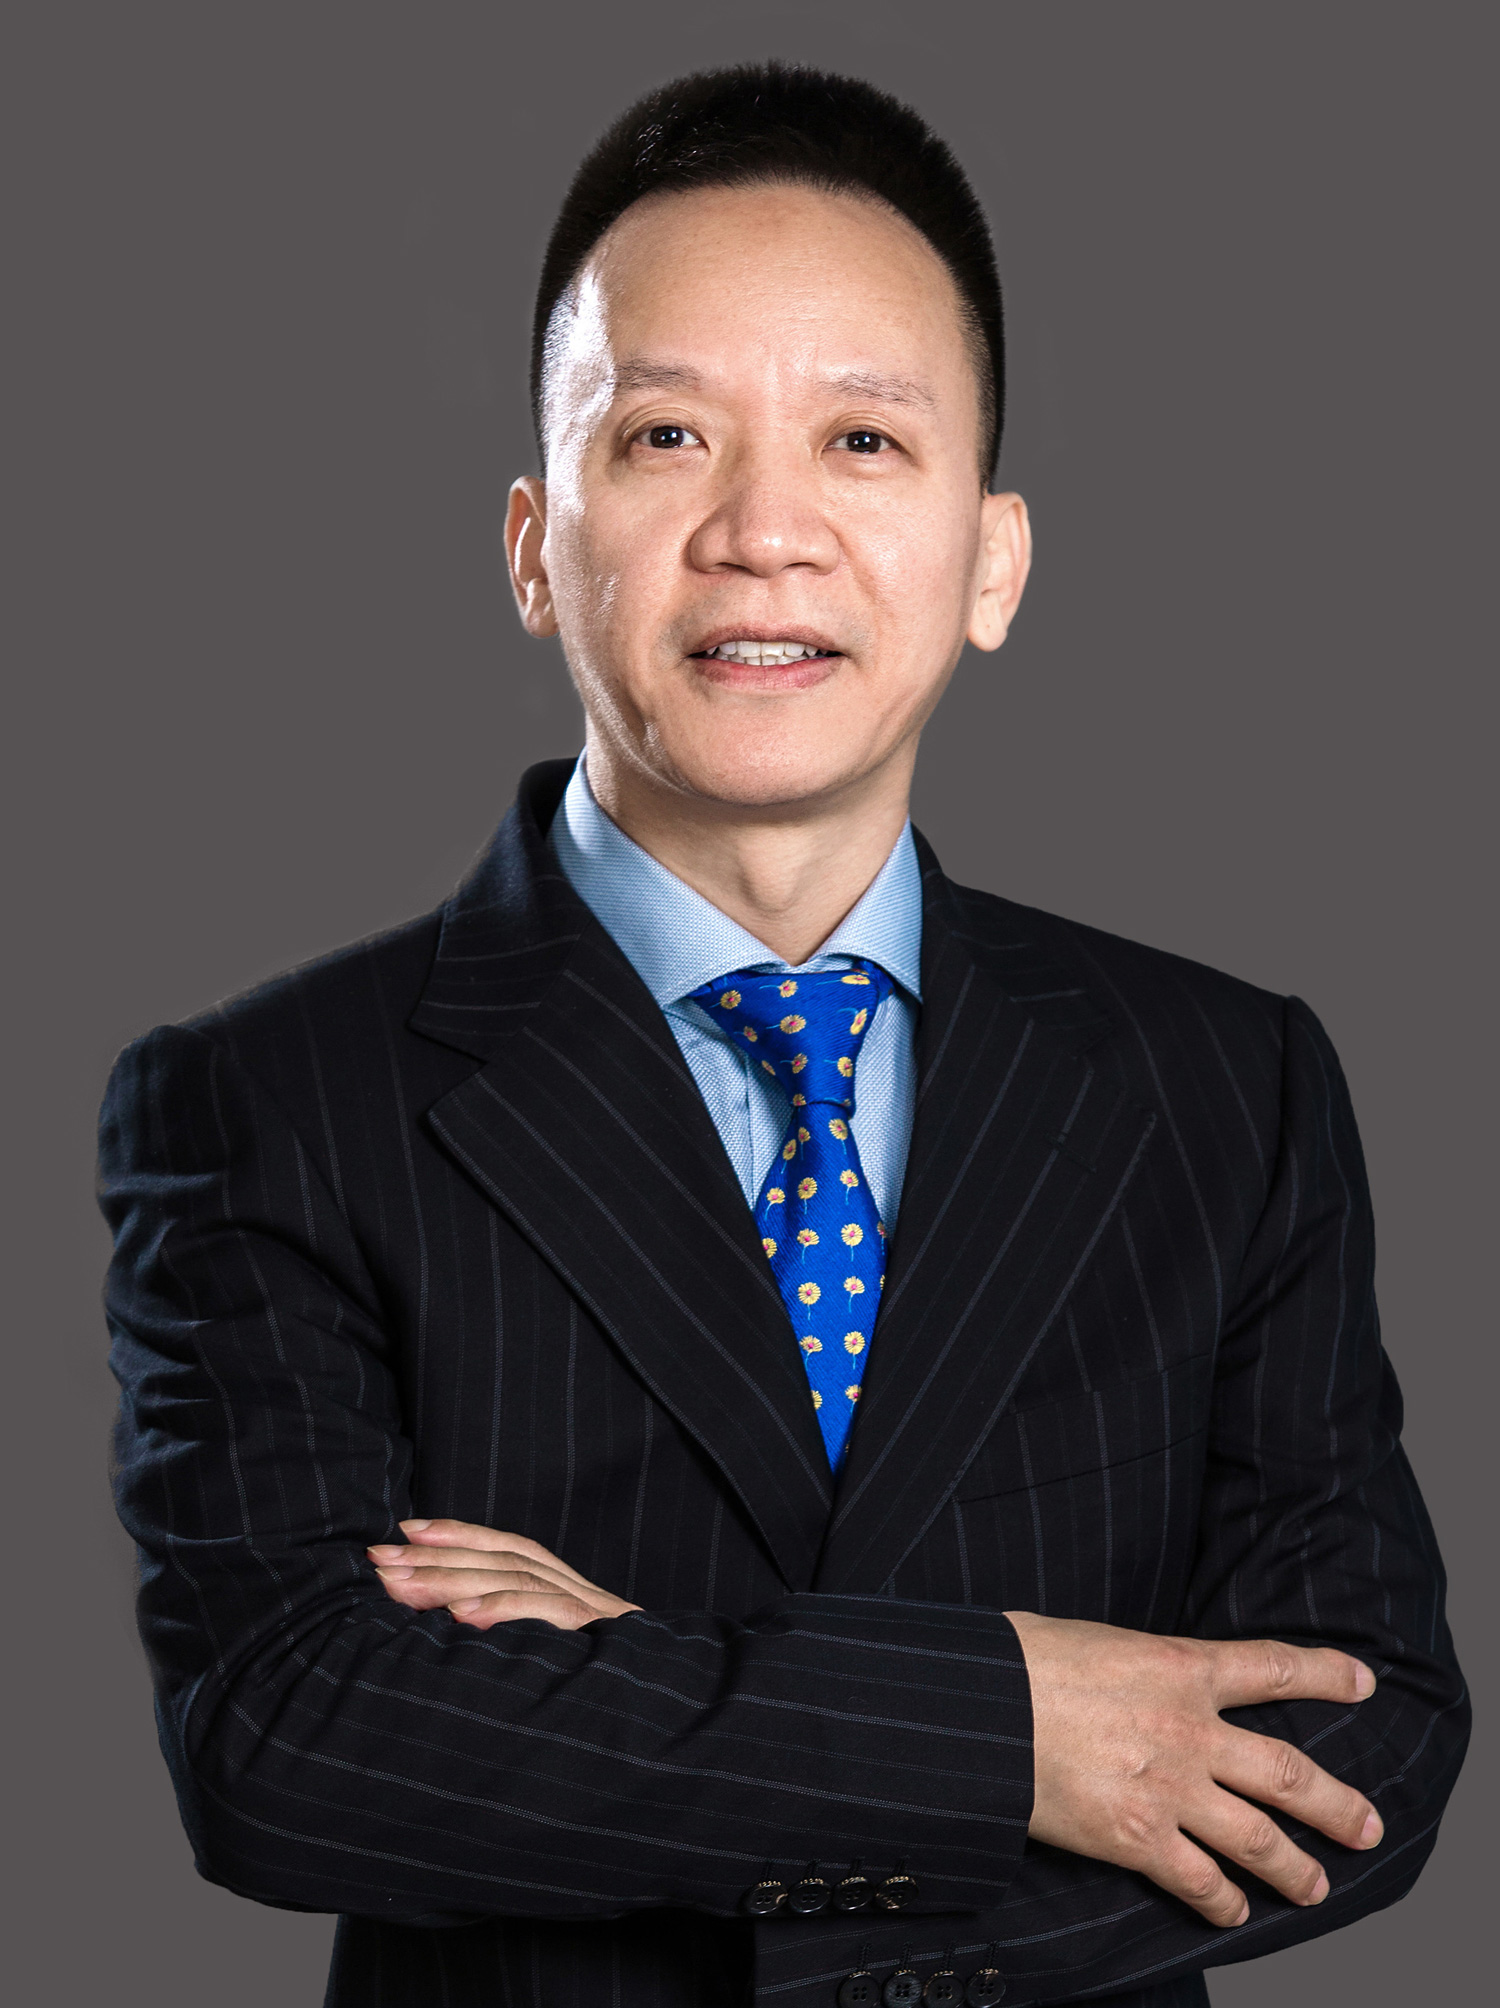  Li Zhongchu. Founder, Chairman, President, Controlling Shareholder at Shiji